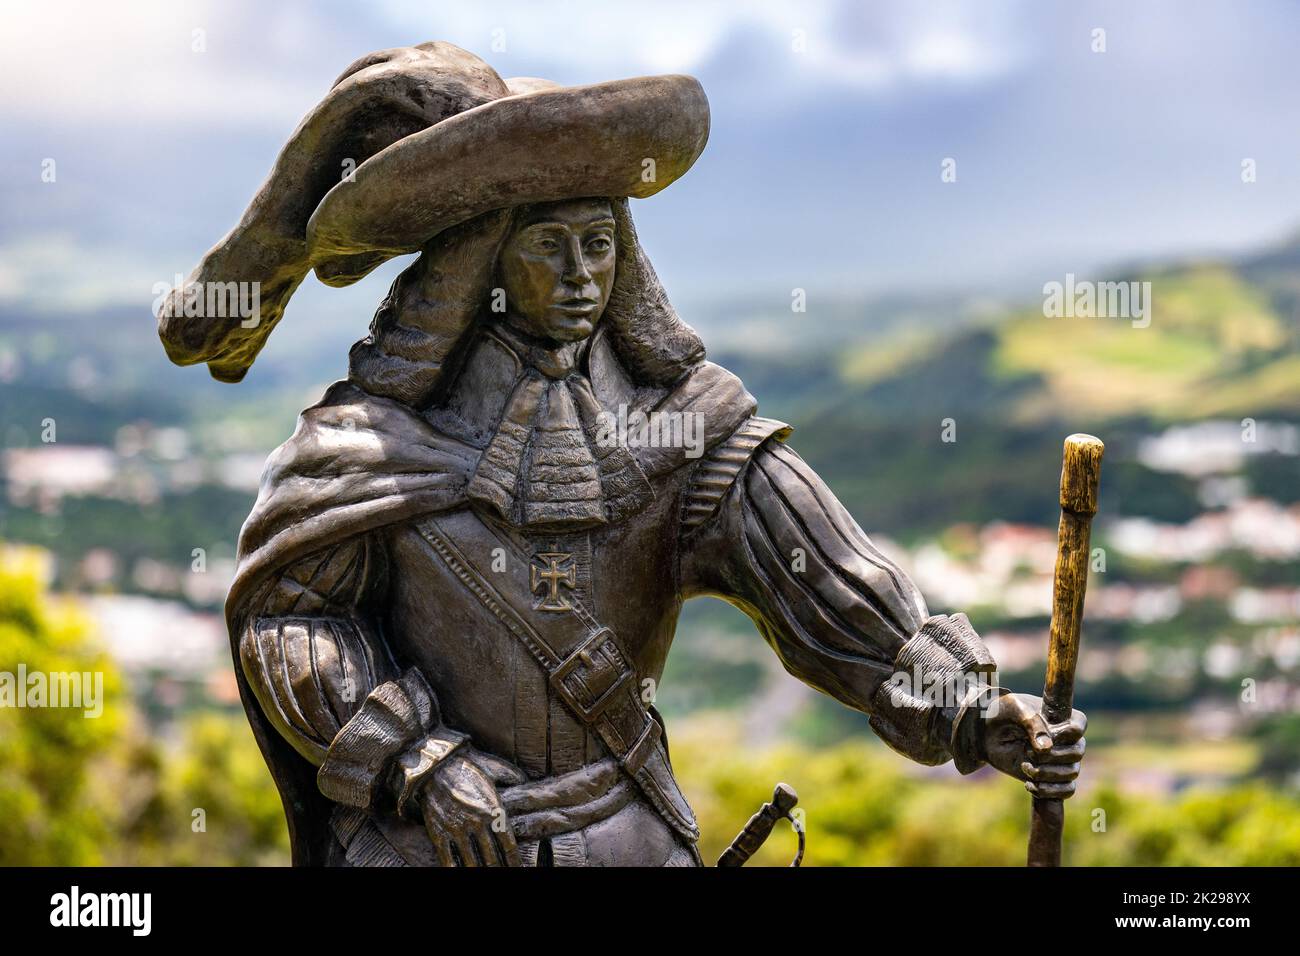 Statua di Afonso VI secondo Re del Portogallo sul Monte Brasil ad Angra do Heroismo, Isola di Terceira, Azzorre, Portogallo. Foto Stock